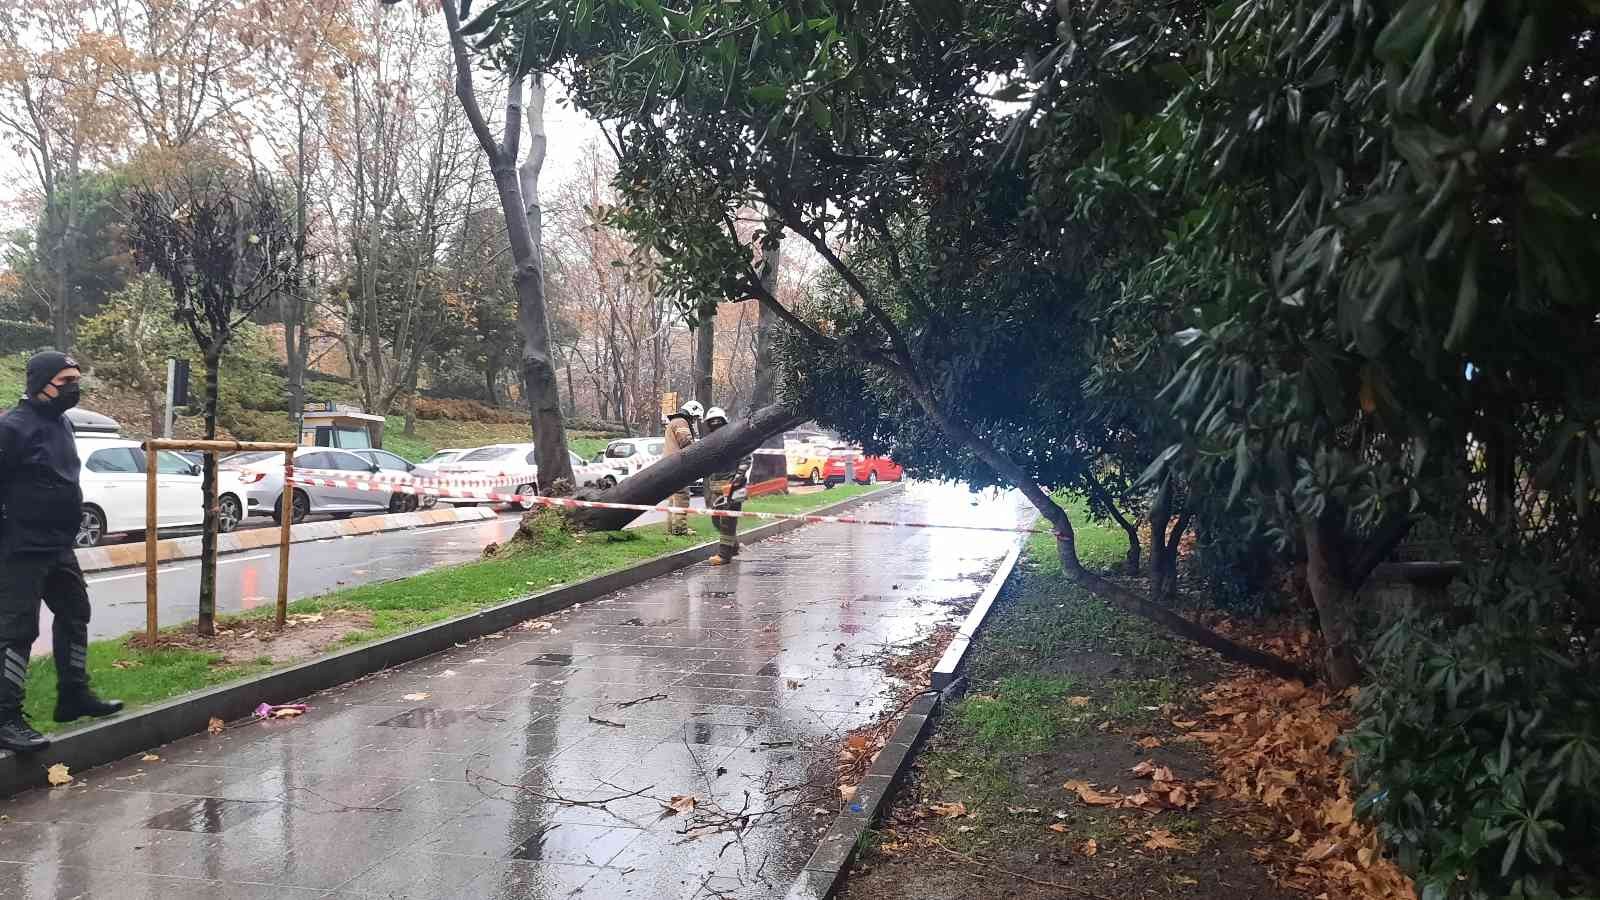 Maçka Parkı girişinde ağaç devrildi: Trafik durma noktasına geldi #istanbul